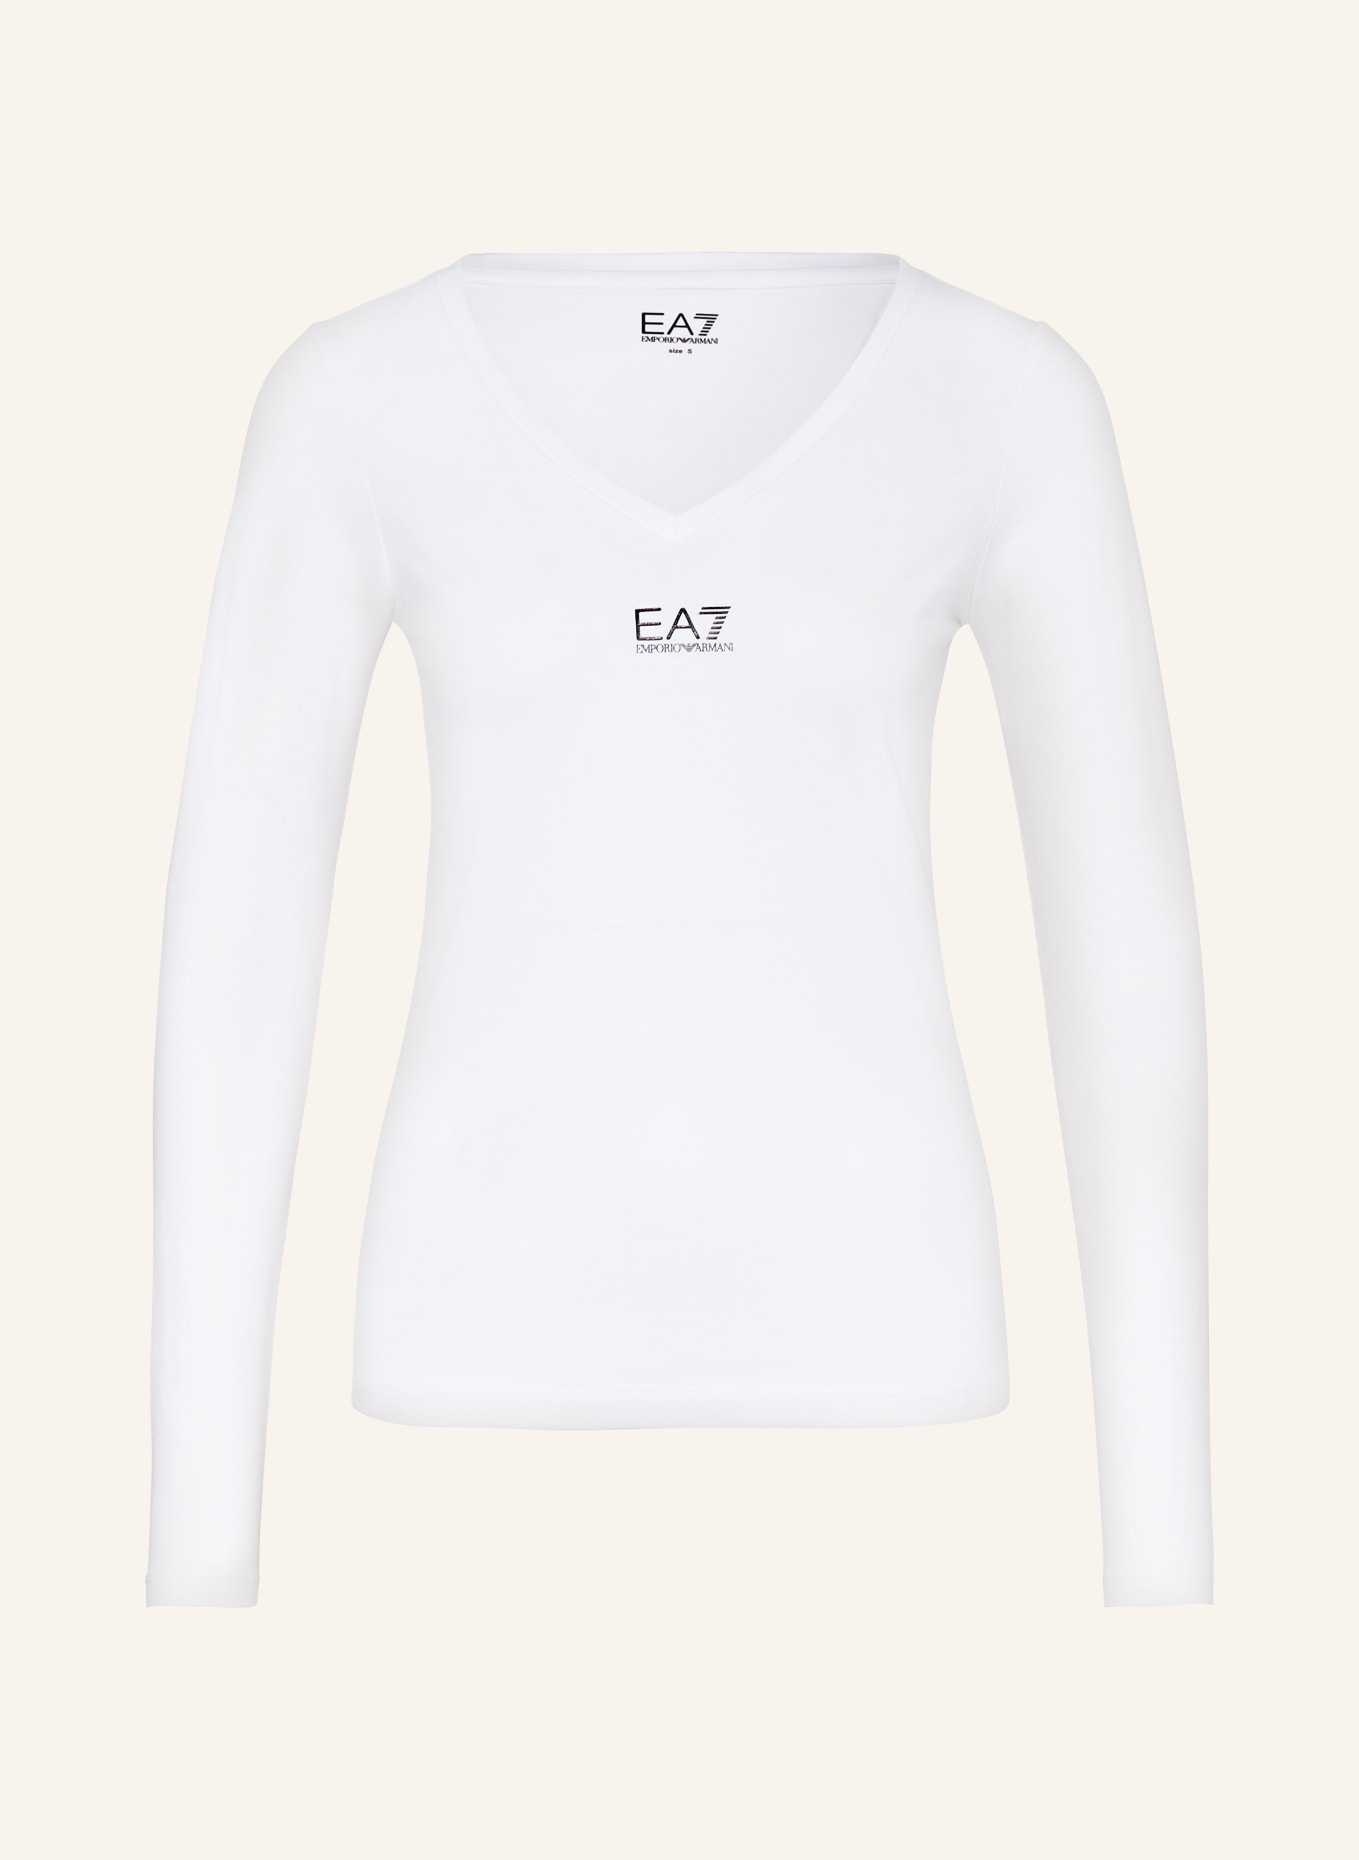 EA7 EMPORIO ARMANI Long sleeve shirt, Color: WHITE (Image 1)